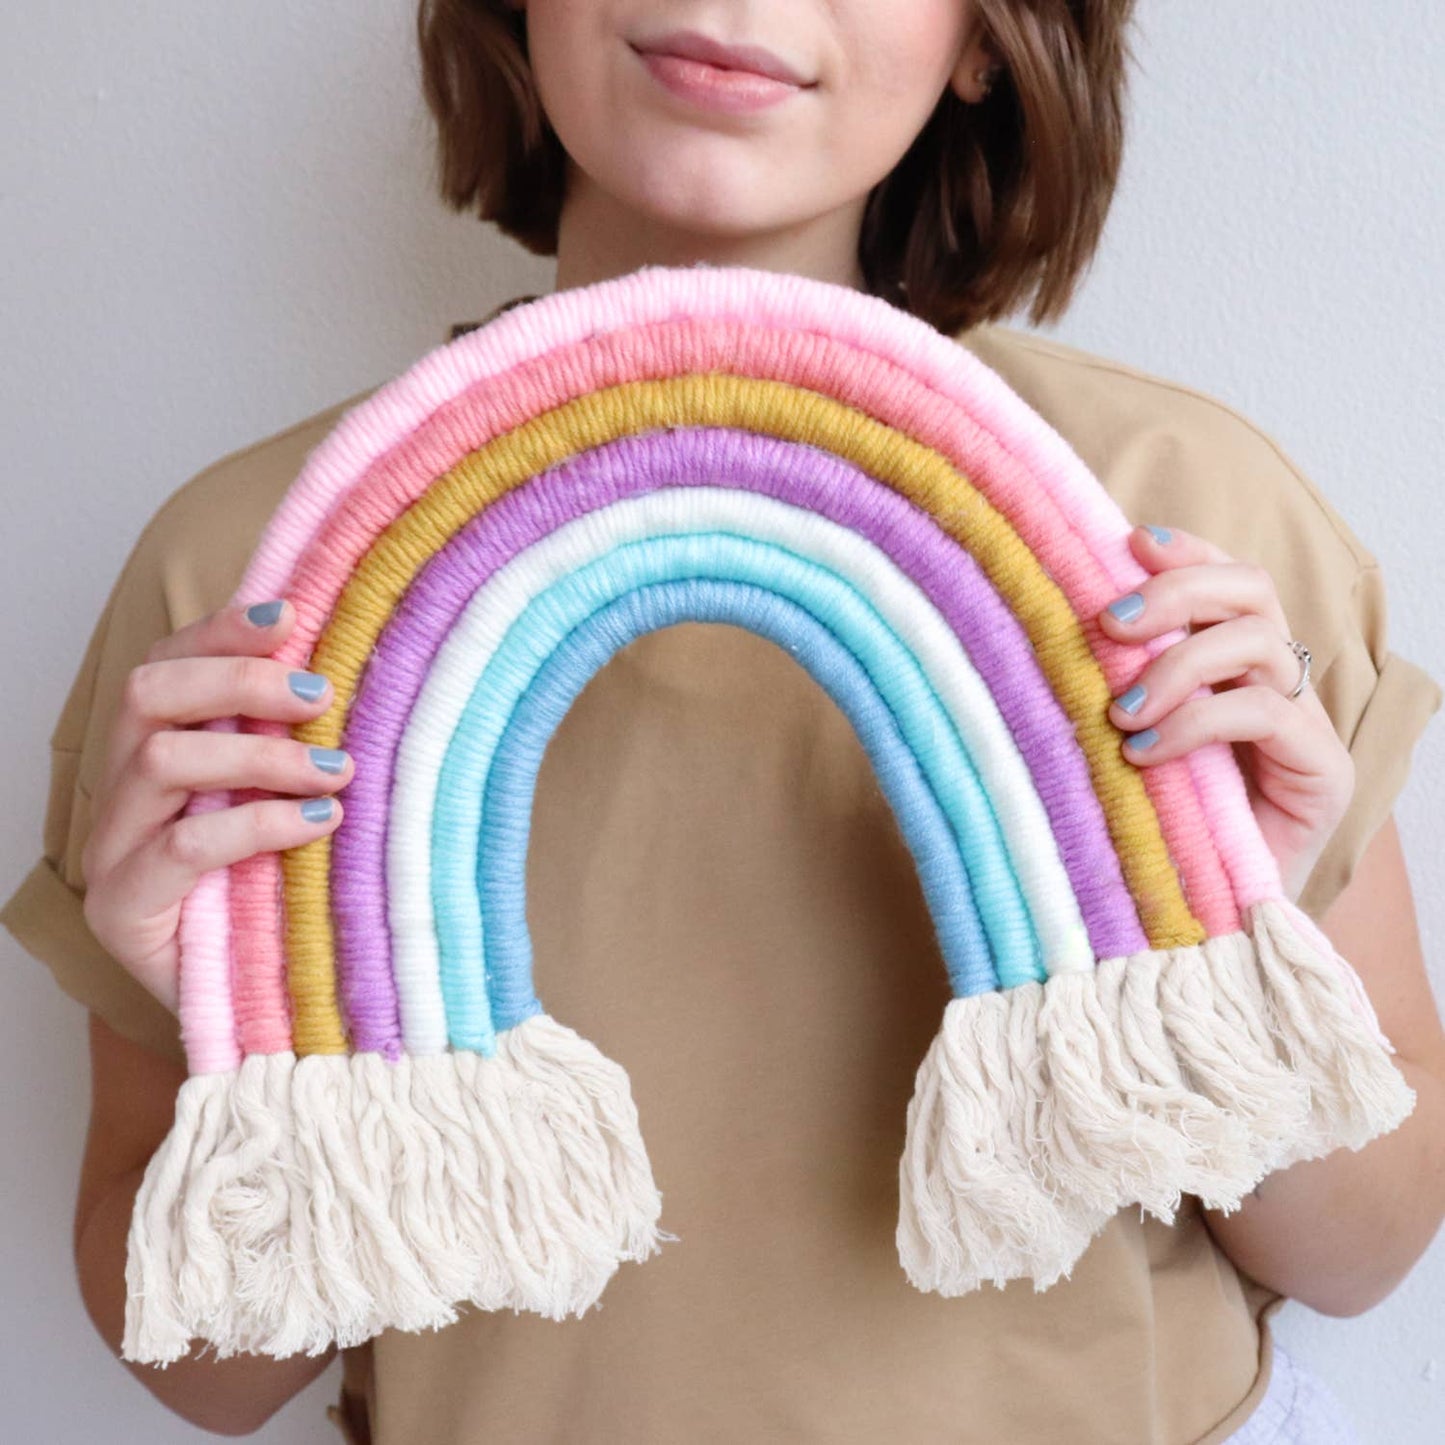 DIY Rainbow Yarn Bedroom Decor